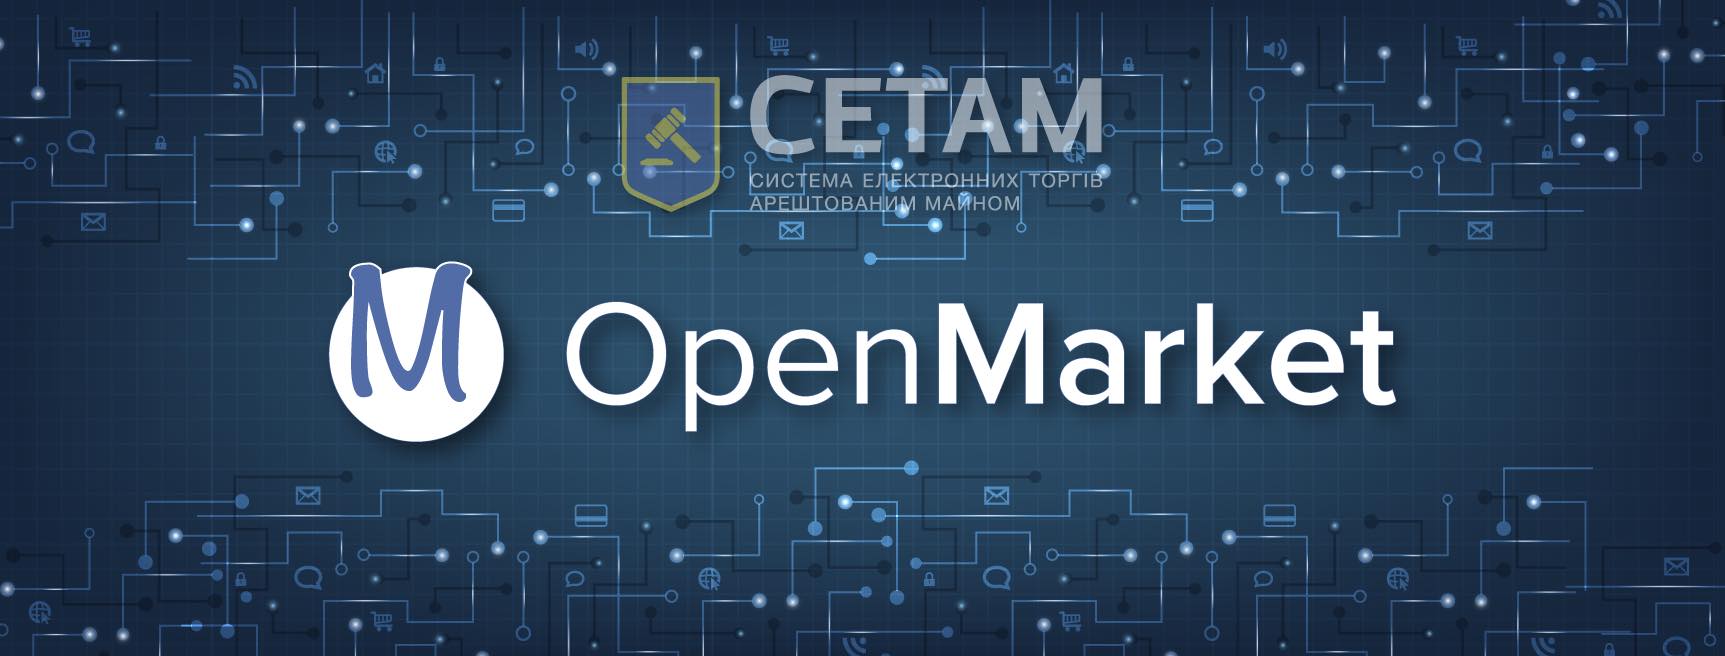 OpenMarket (ДП “СЕТАМ”) продав перші активи Приватбанку  - Фото